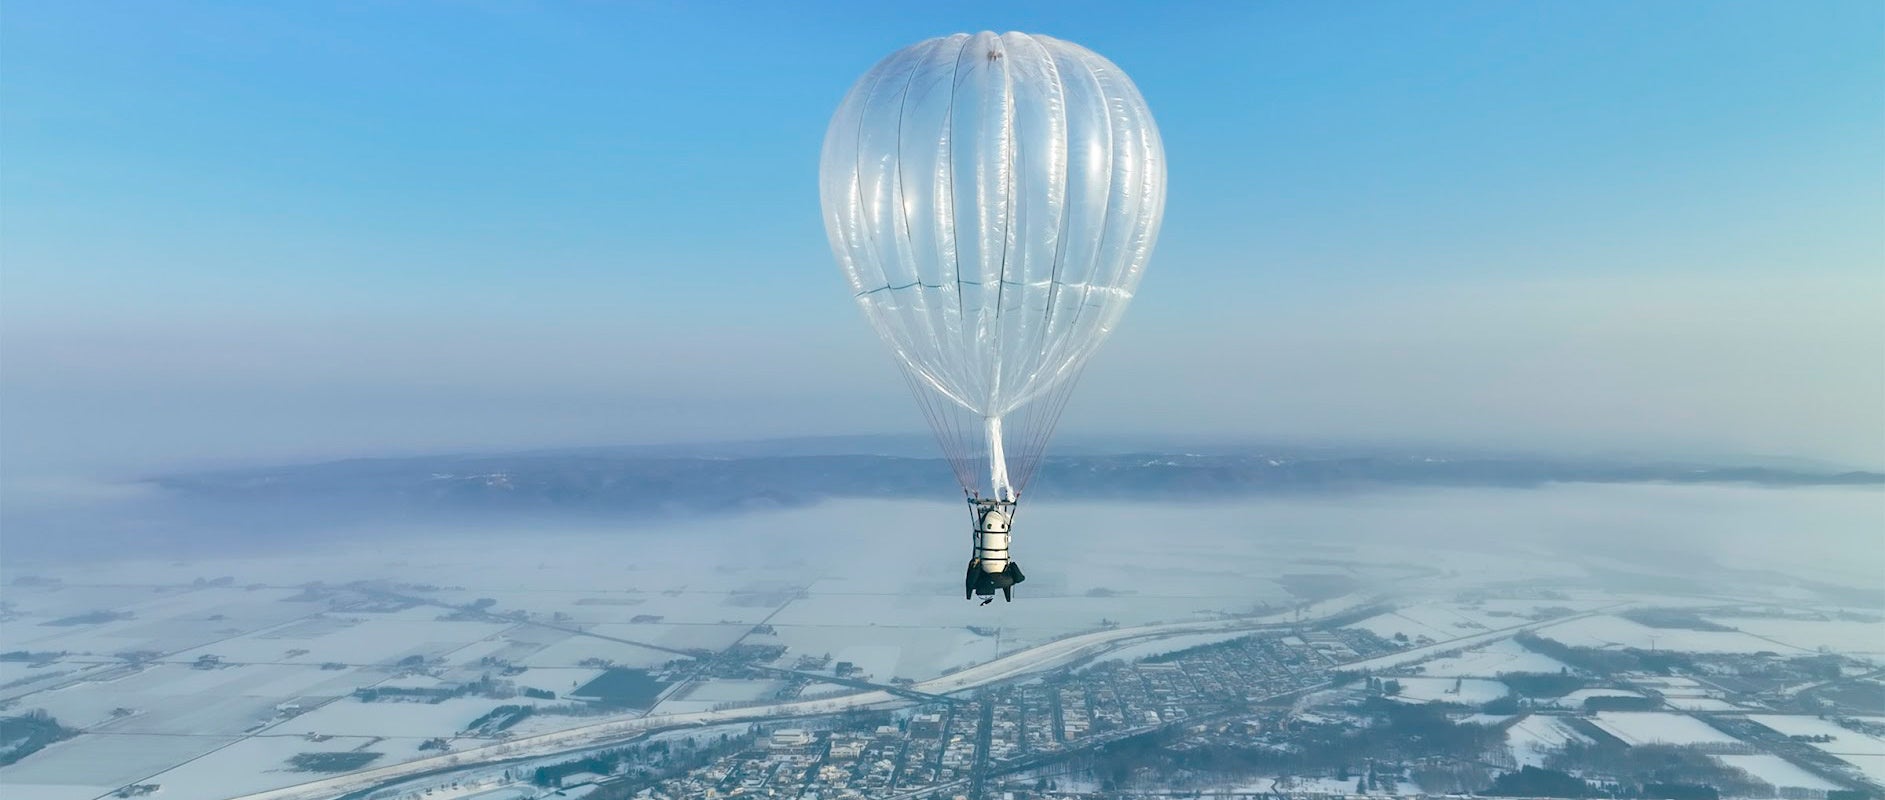 岩谷技研、自社開発ガス気球による有人飛行試験で最大到達高度1,190mを達成